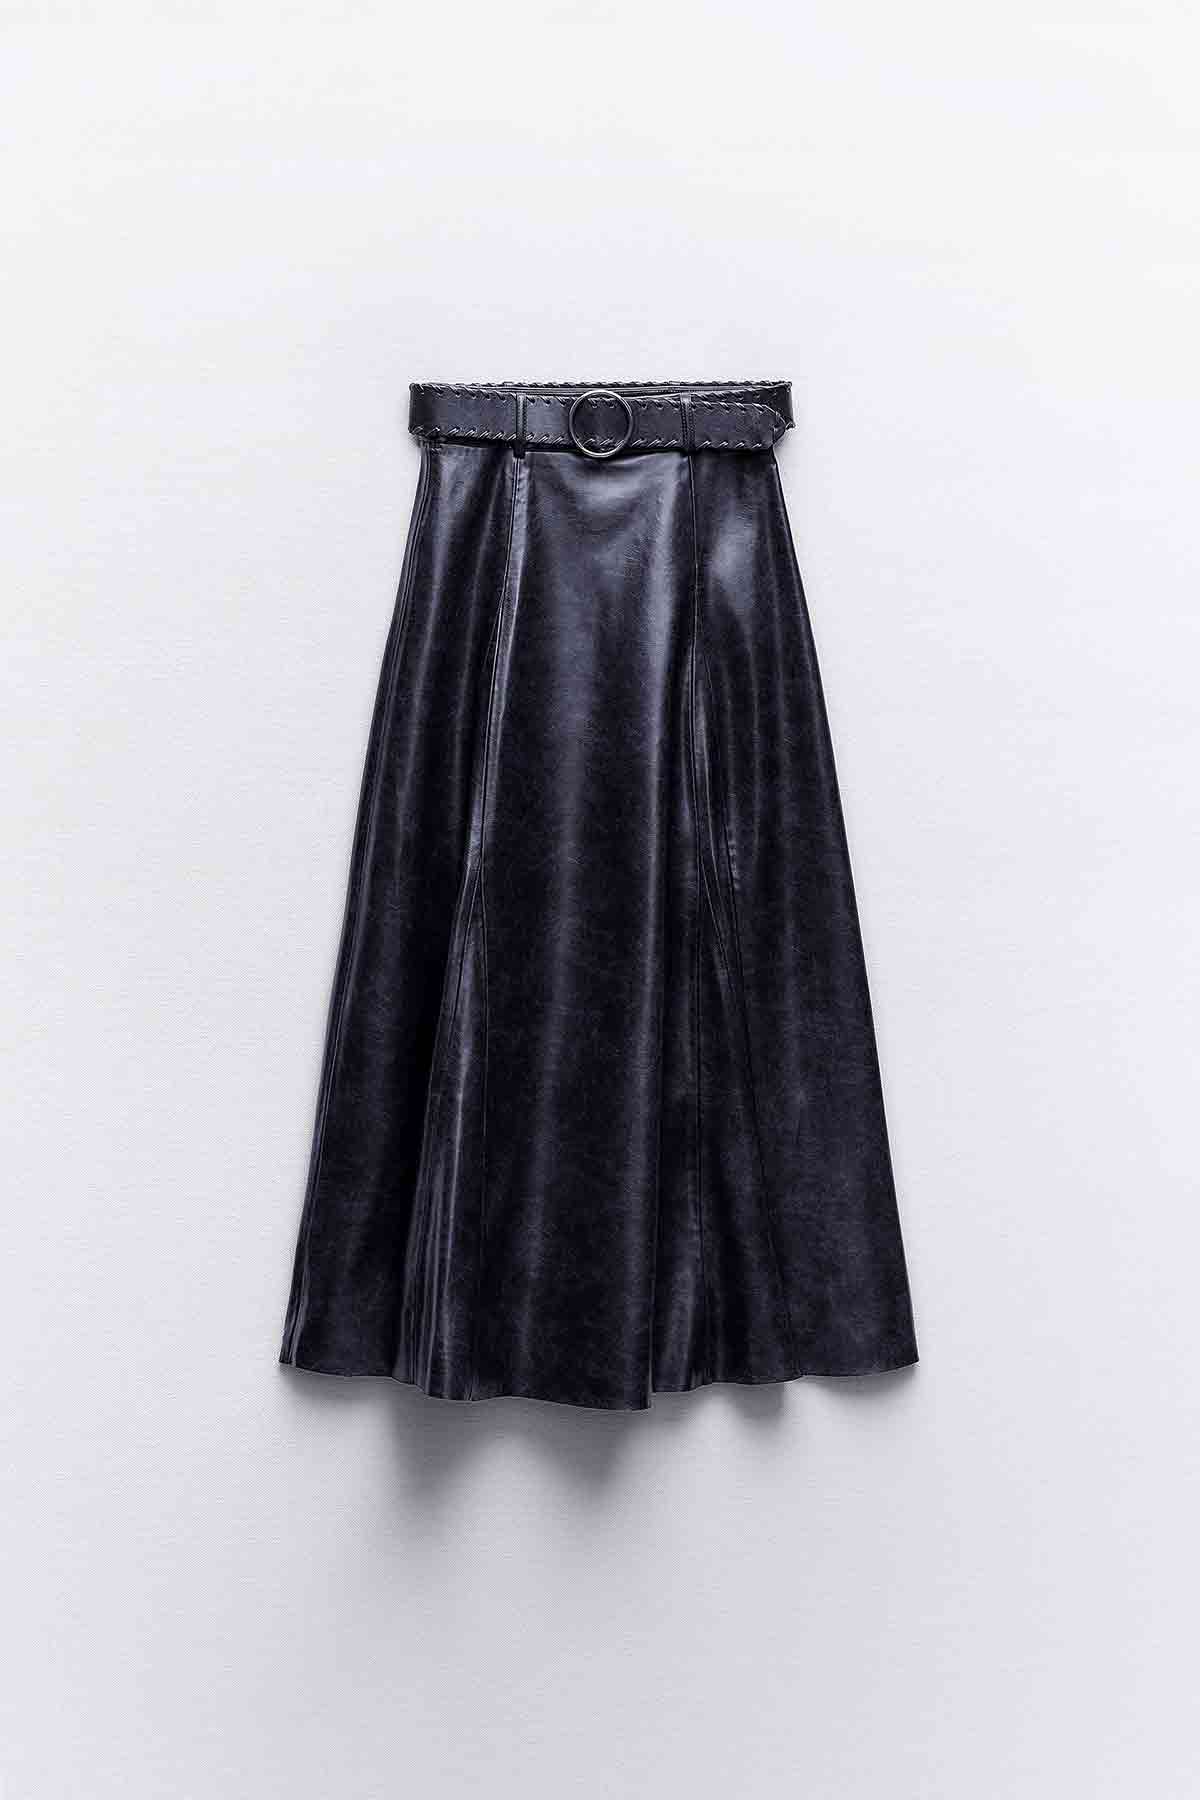 Falda negra de Zara